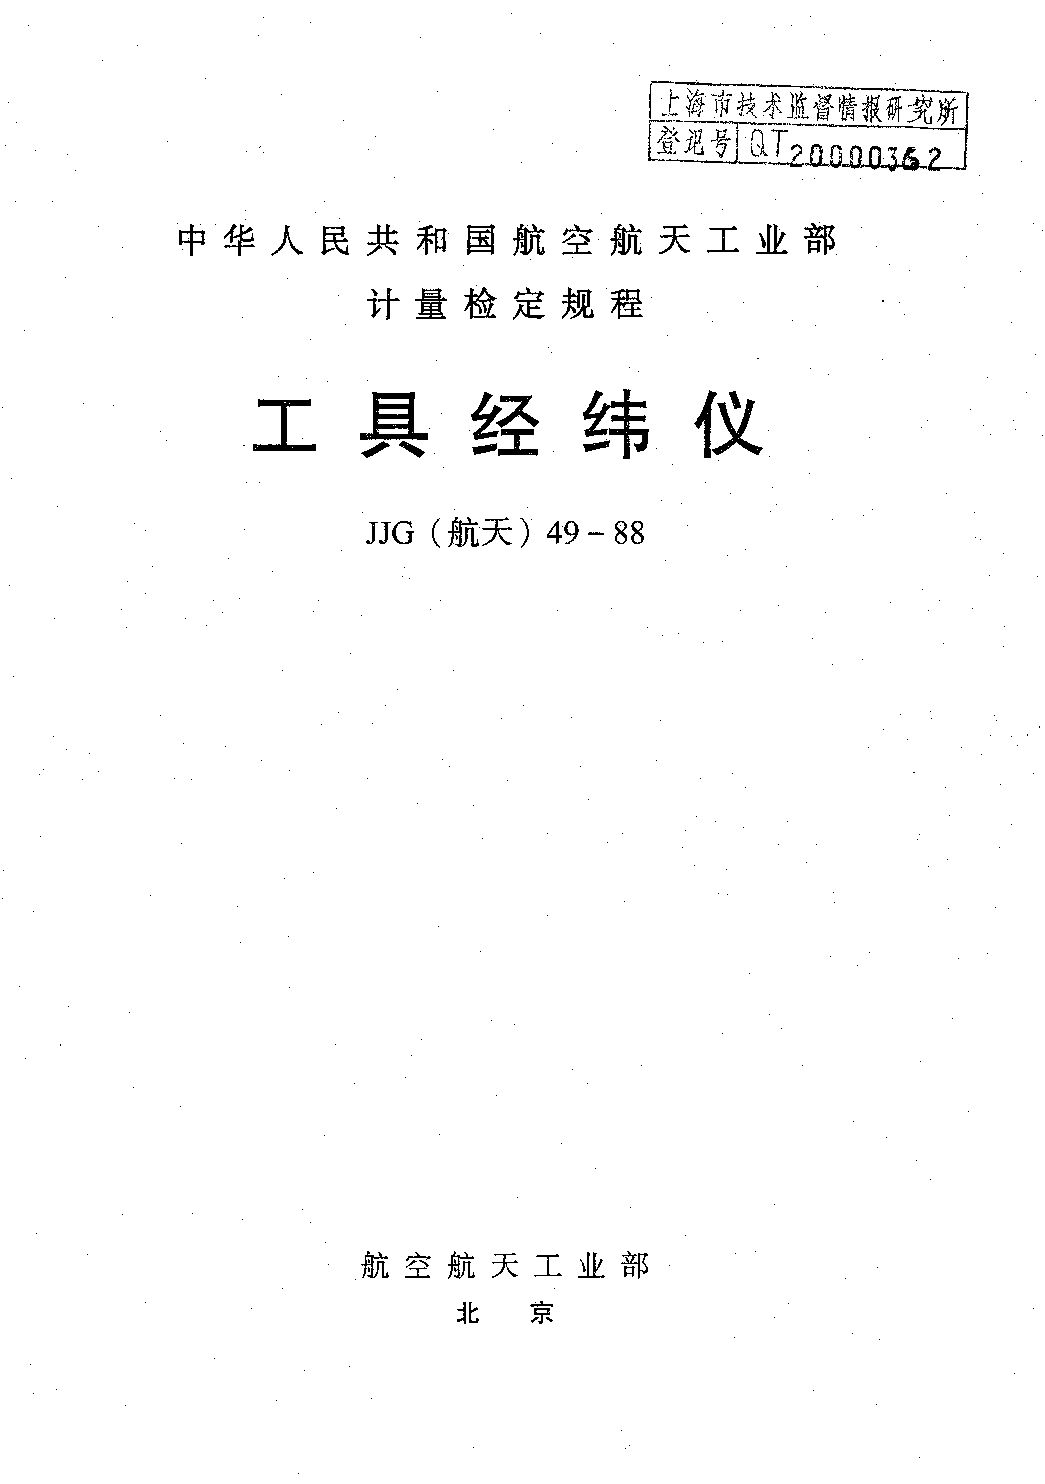 JJG(航天) 49-1988封面图